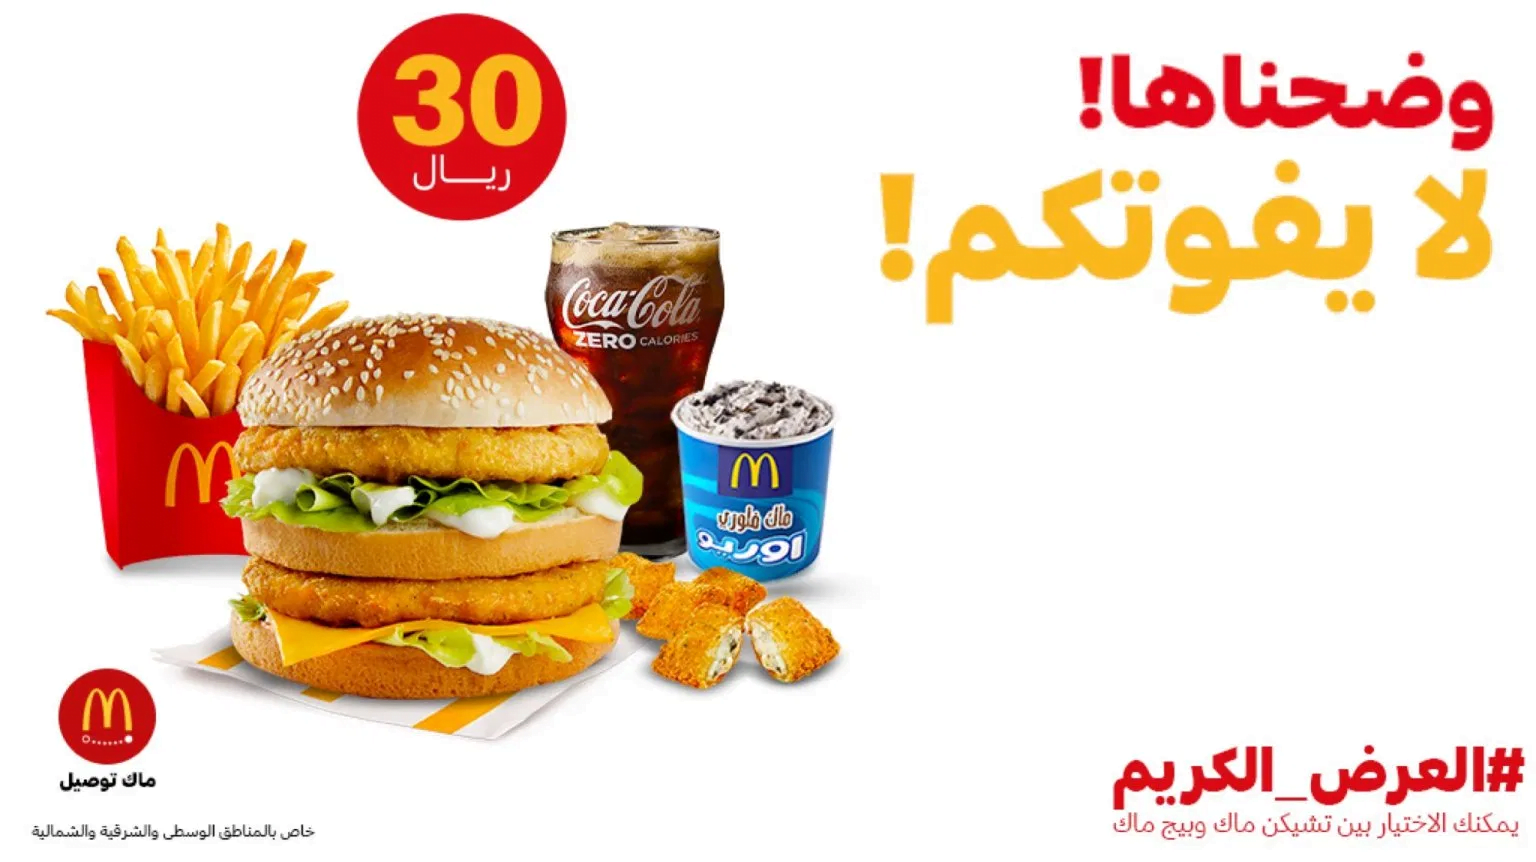 clipboard10 1 - عروض رمضان : عروض مطاعم السعودية لوجبات الافطار لشهر رمضان 2020 - 1441 محدثة يومياً